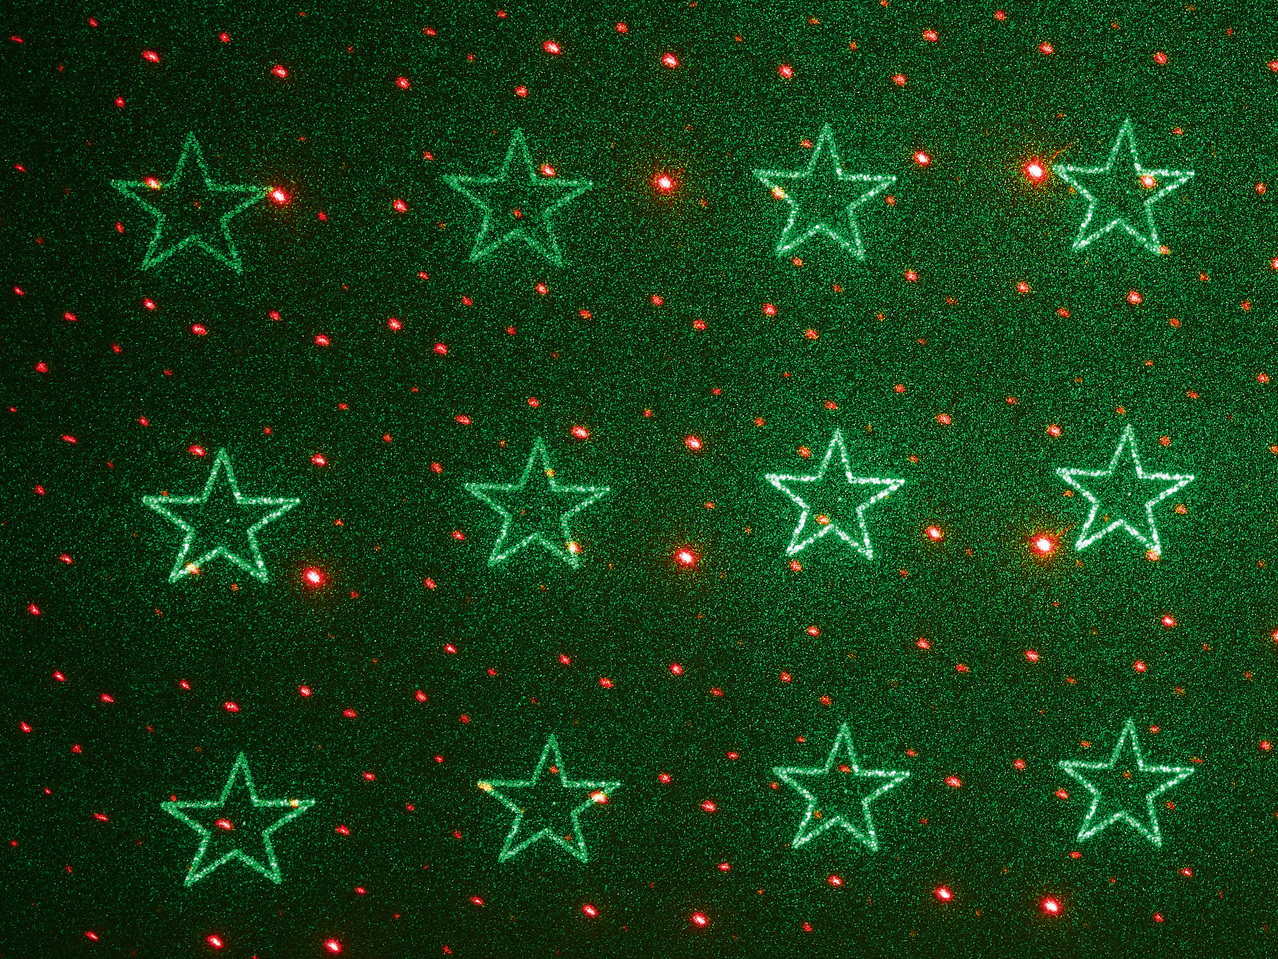 MELINERA Laser Light Projector